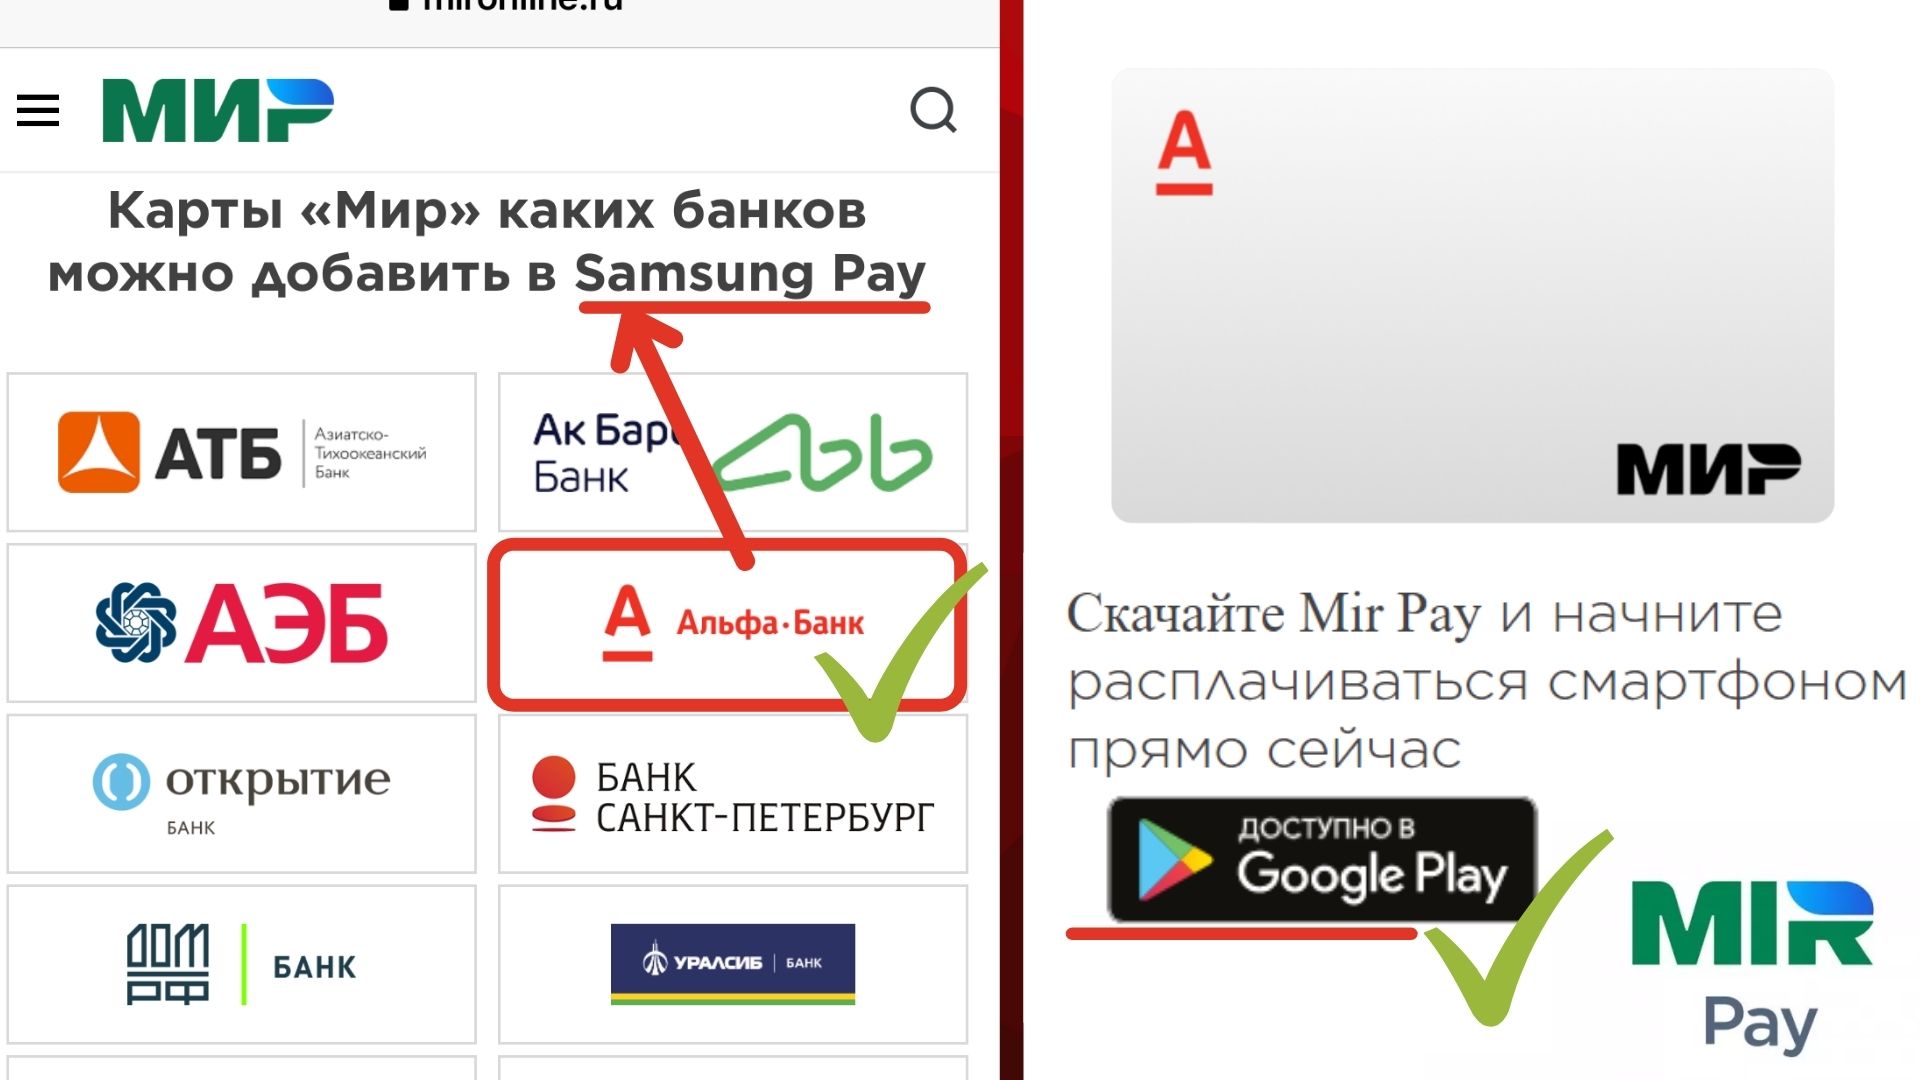 Альфа картой МИР можно платить через смартфон: Samsung Pay и Mir Pay